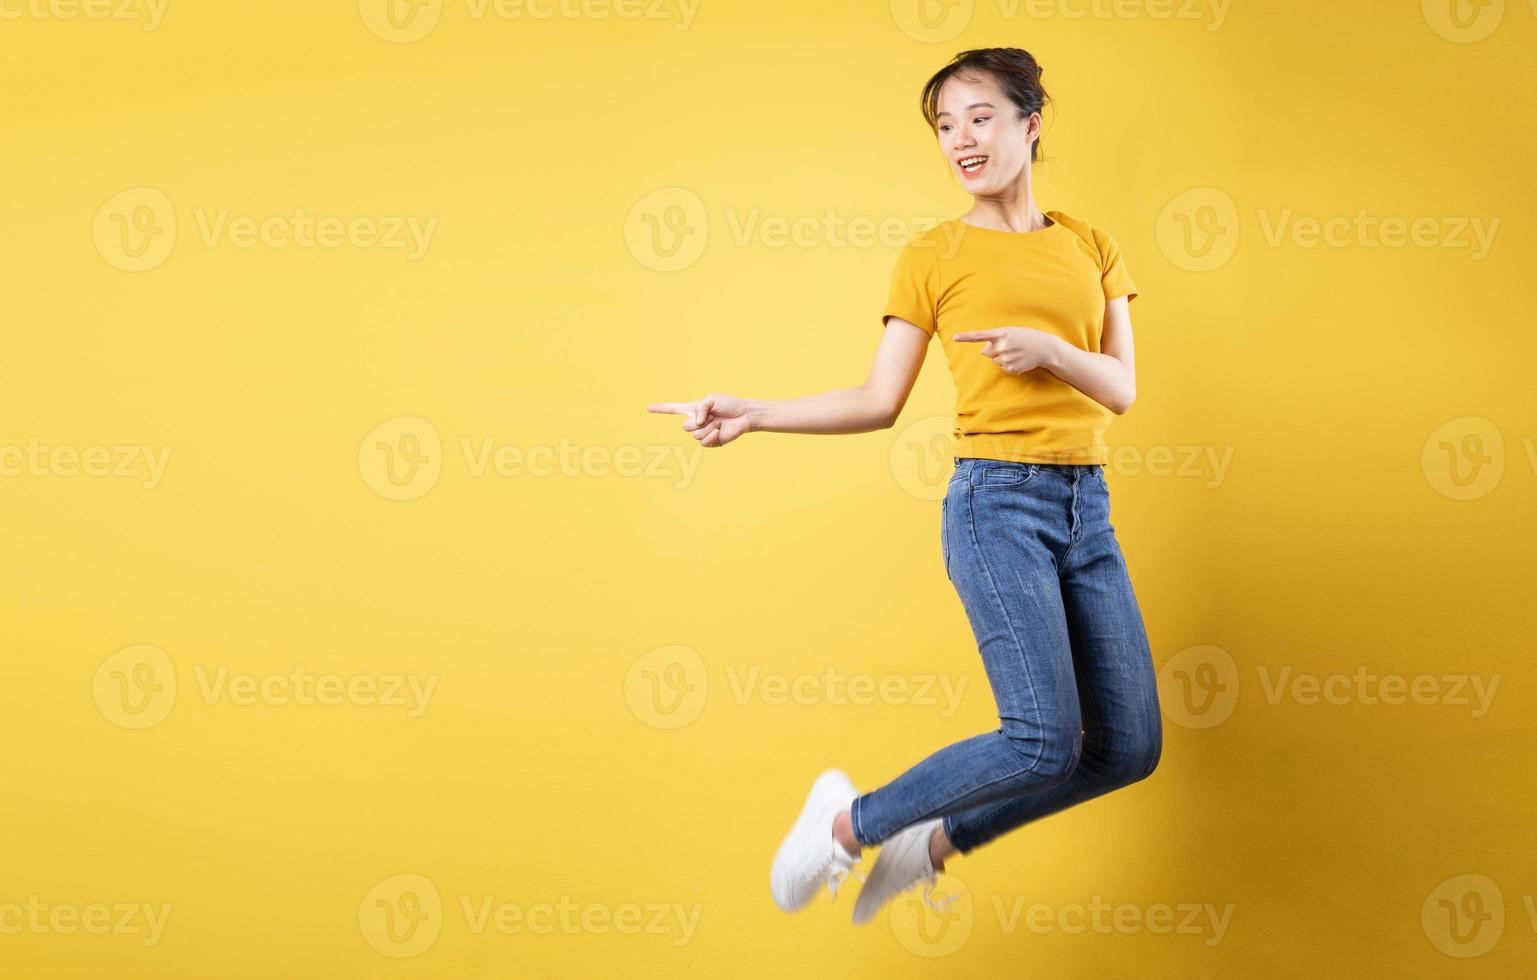 retrato de corpo inteiro de uma garota alegre pulando isolado em um fundo amarelo foto